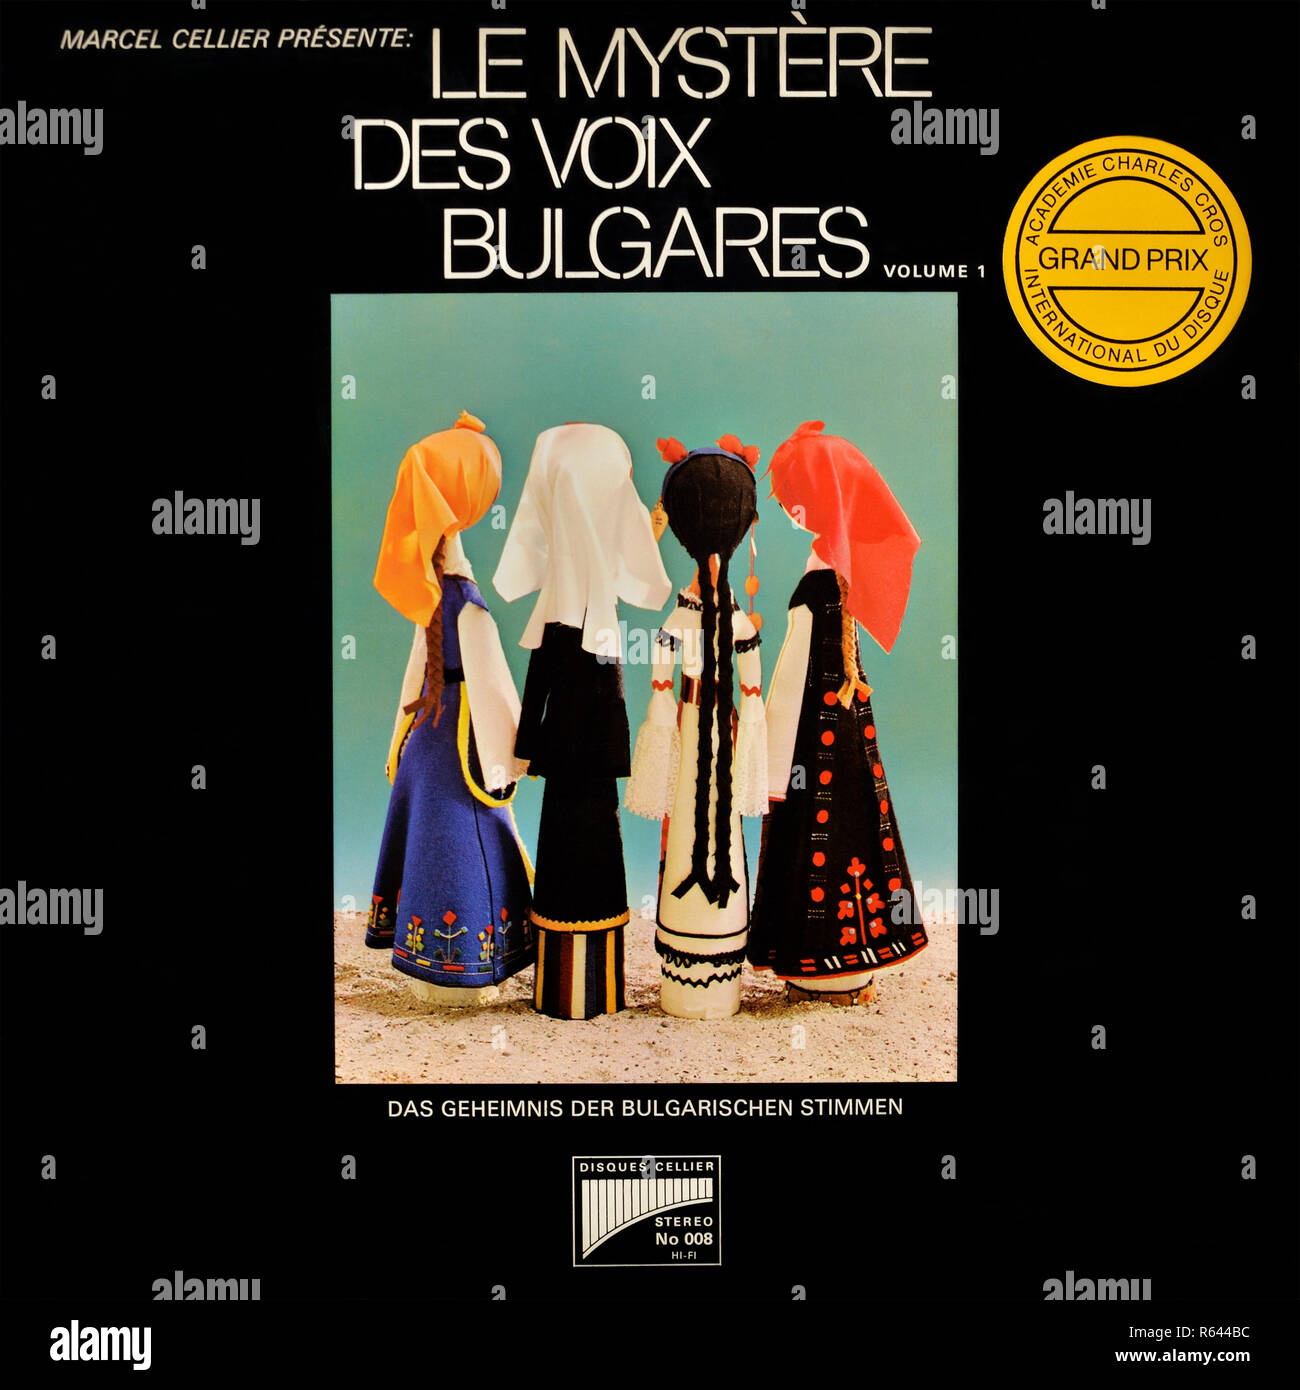 Marcel Cellier - original Vinyl Album Cover - Le Mystère des Voix Bulgares - 1975 Stockfoto